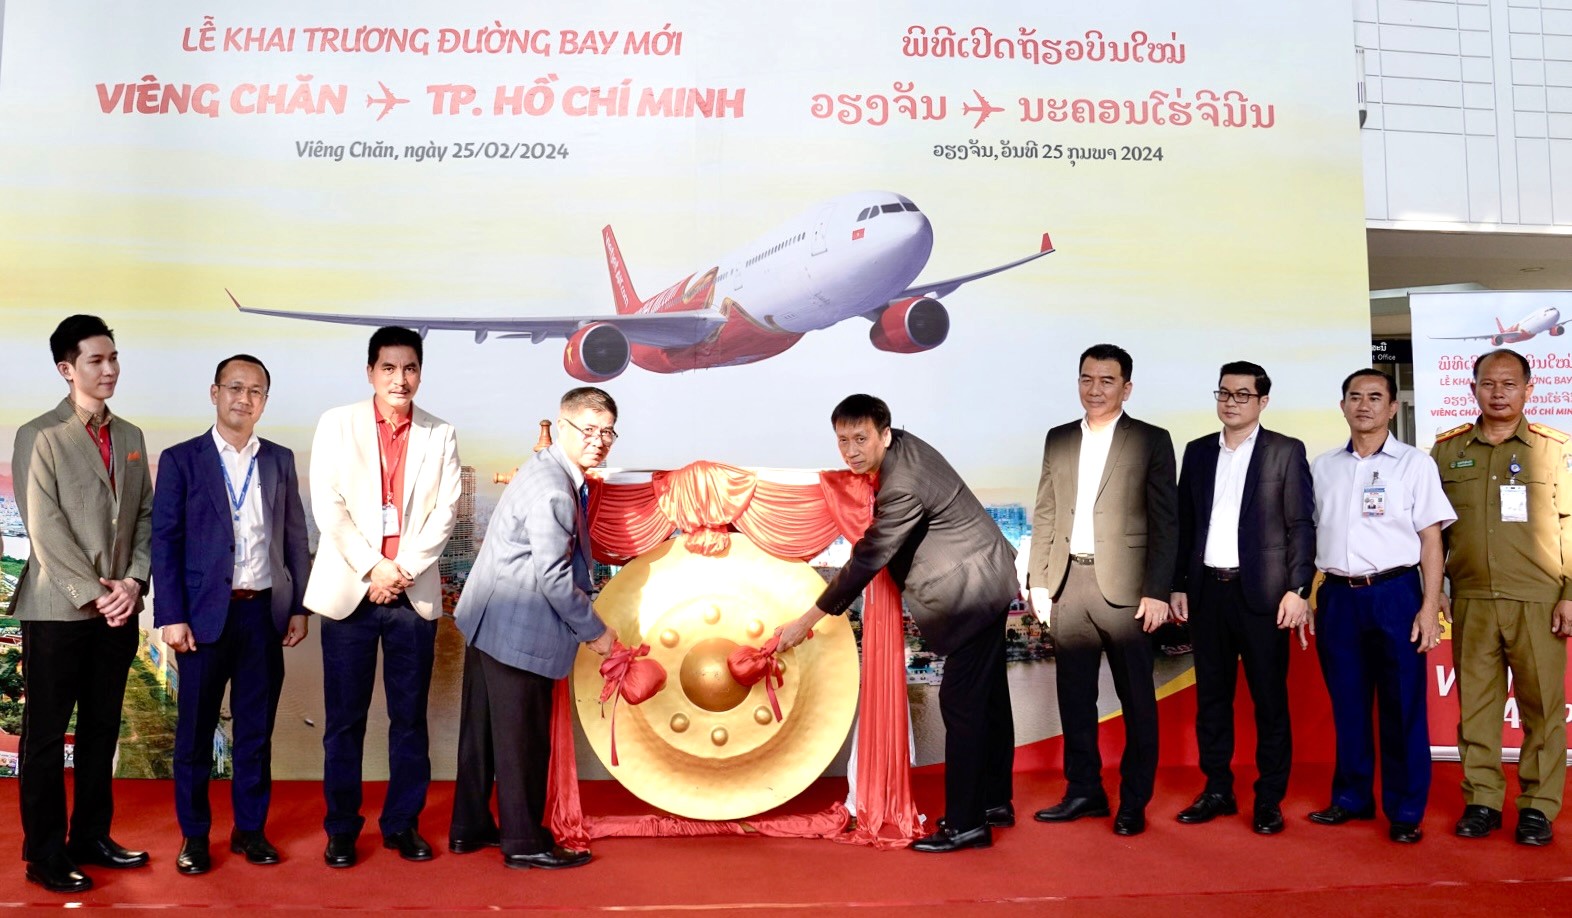 Năm mới rộn ràng, khám phá ngay Viêng Chăn, Lào với đường bay mới của Vietjet - Ảnh 1.